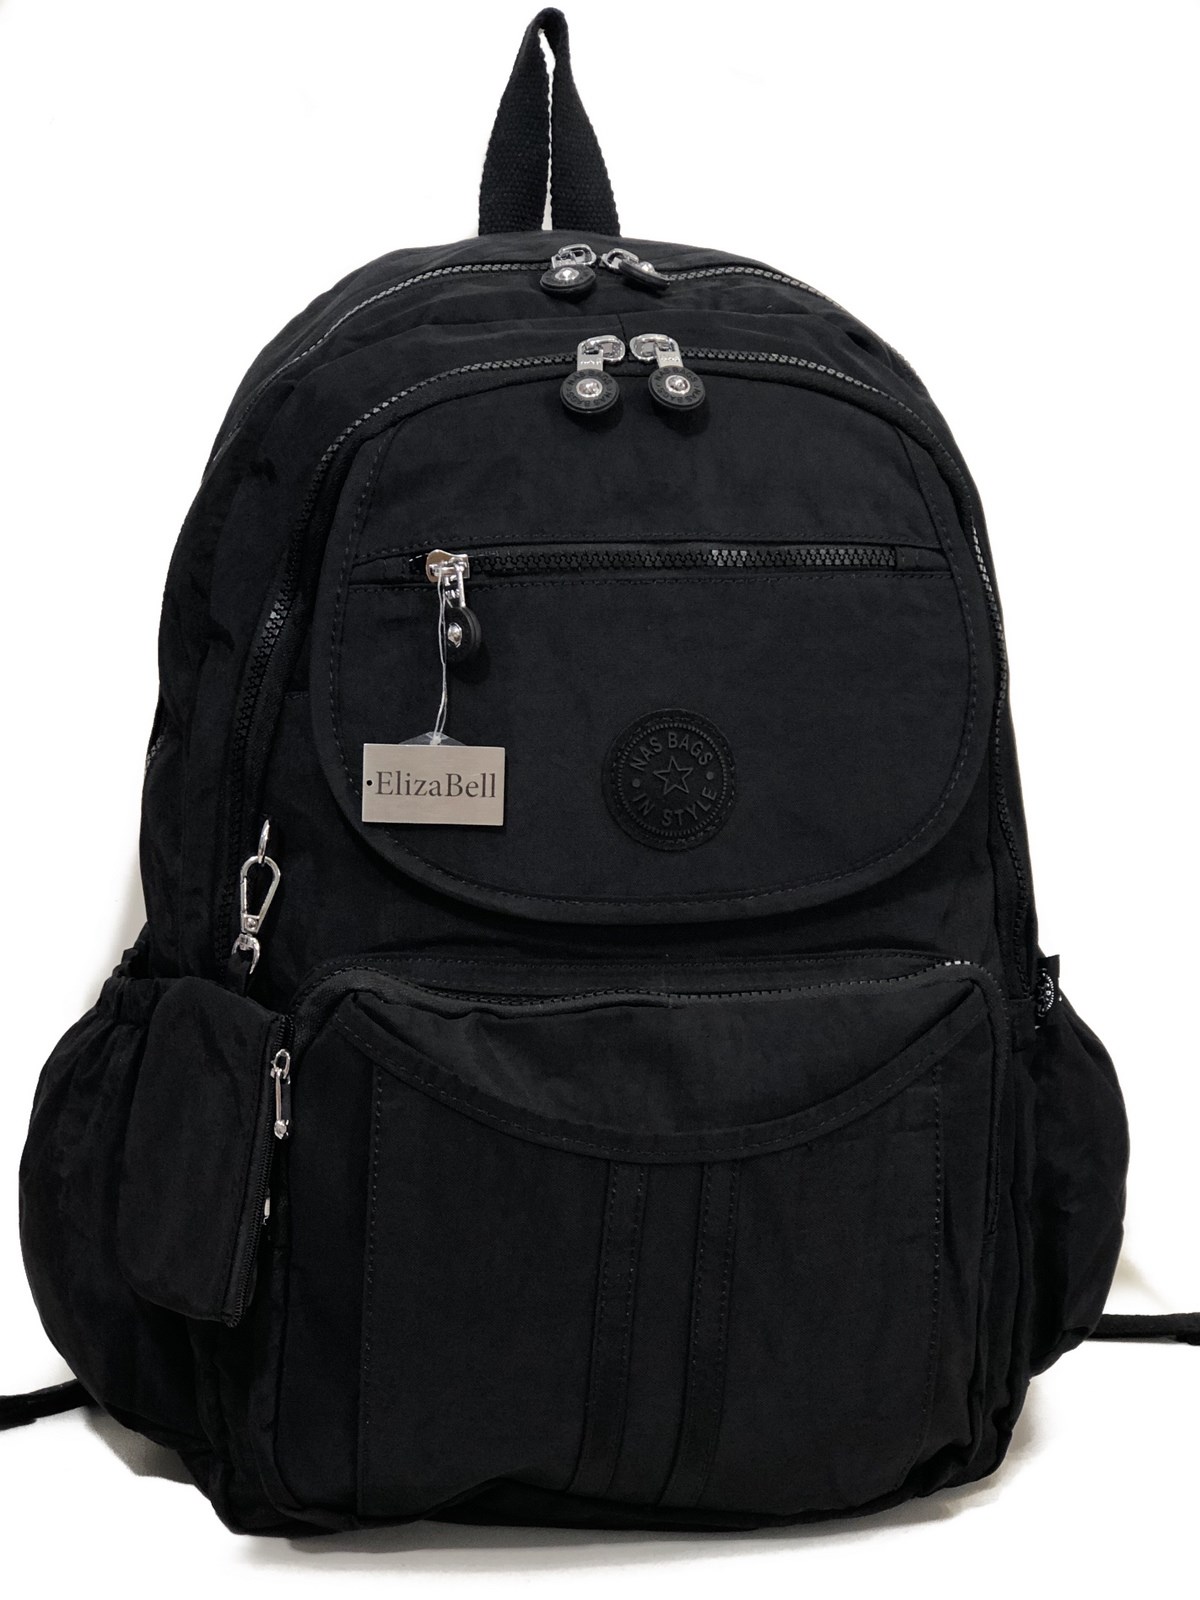 Kadın sırt çantası ve okul çantası krinkıl kumaş ebat 45cm35cm siyah | elizabell.com.tr